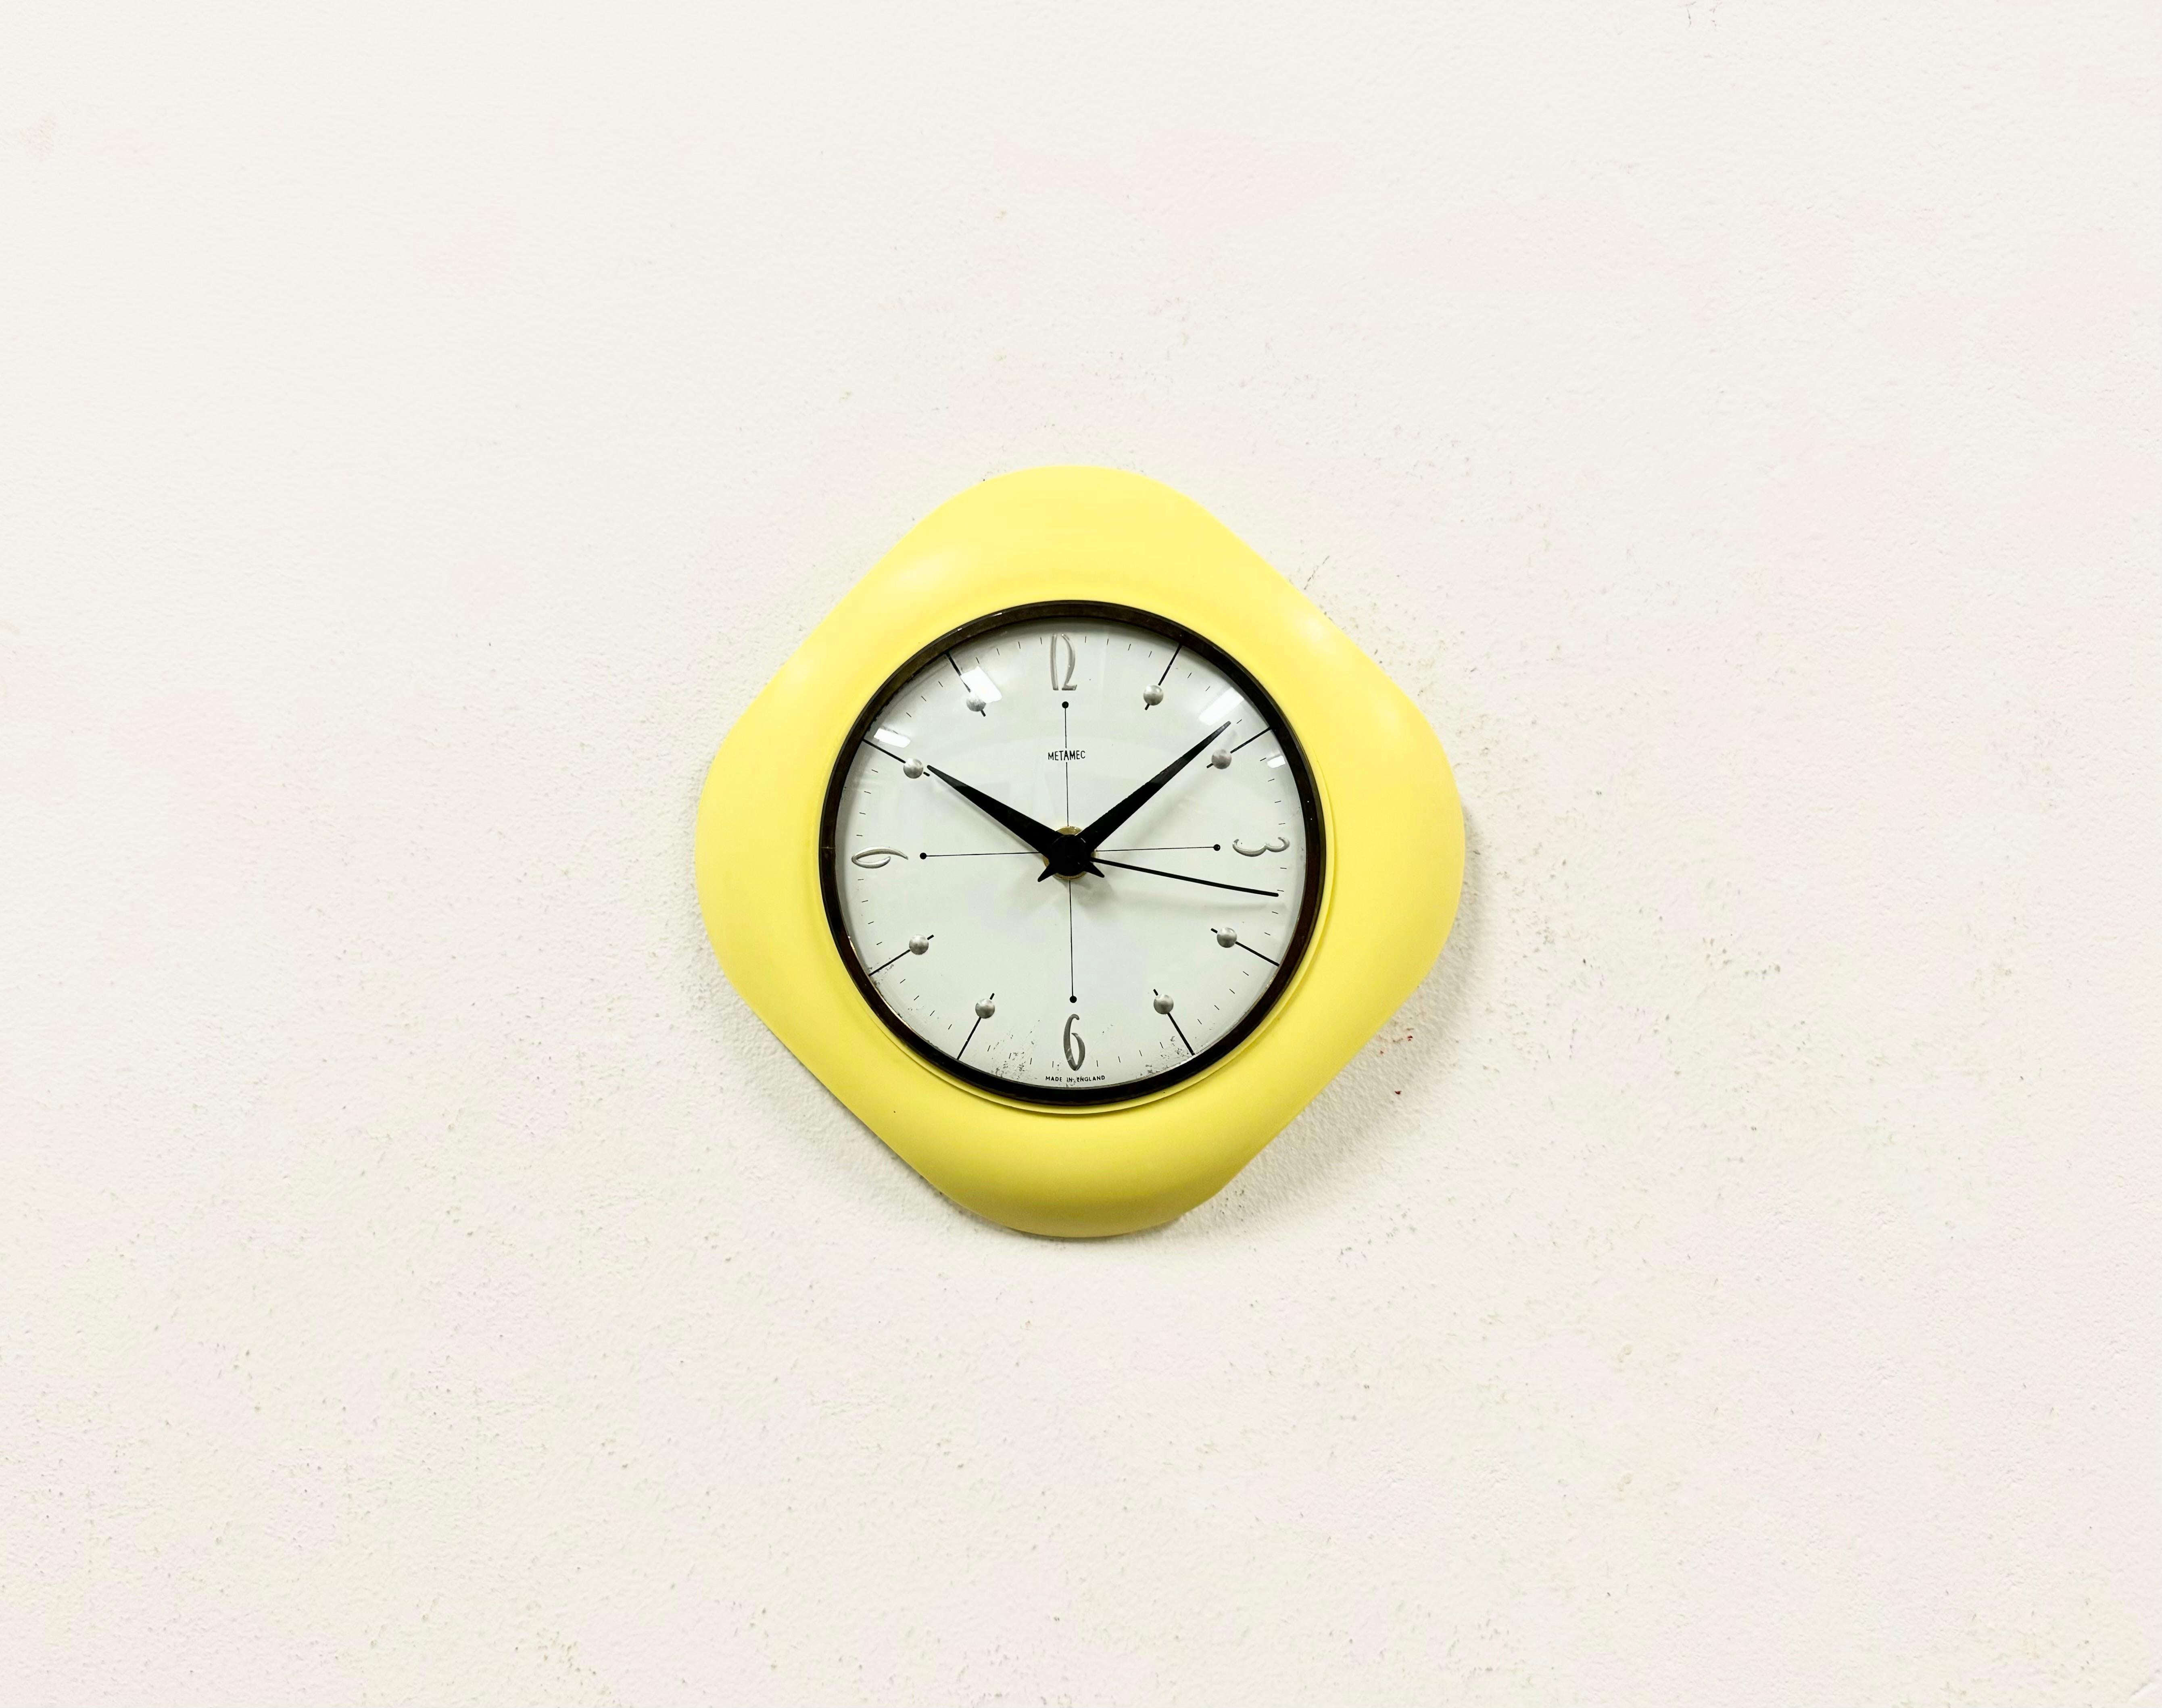 Horloge murale Metamec fabriquée au Royaume-Uni dans les années 1970. Il se compose d'un corps en bakélite jaune et d'un couvercle transparent incurvé avec un anneau en laiton. La pièce a été convertie en un mécanisme d'horlogerie alimenté par une